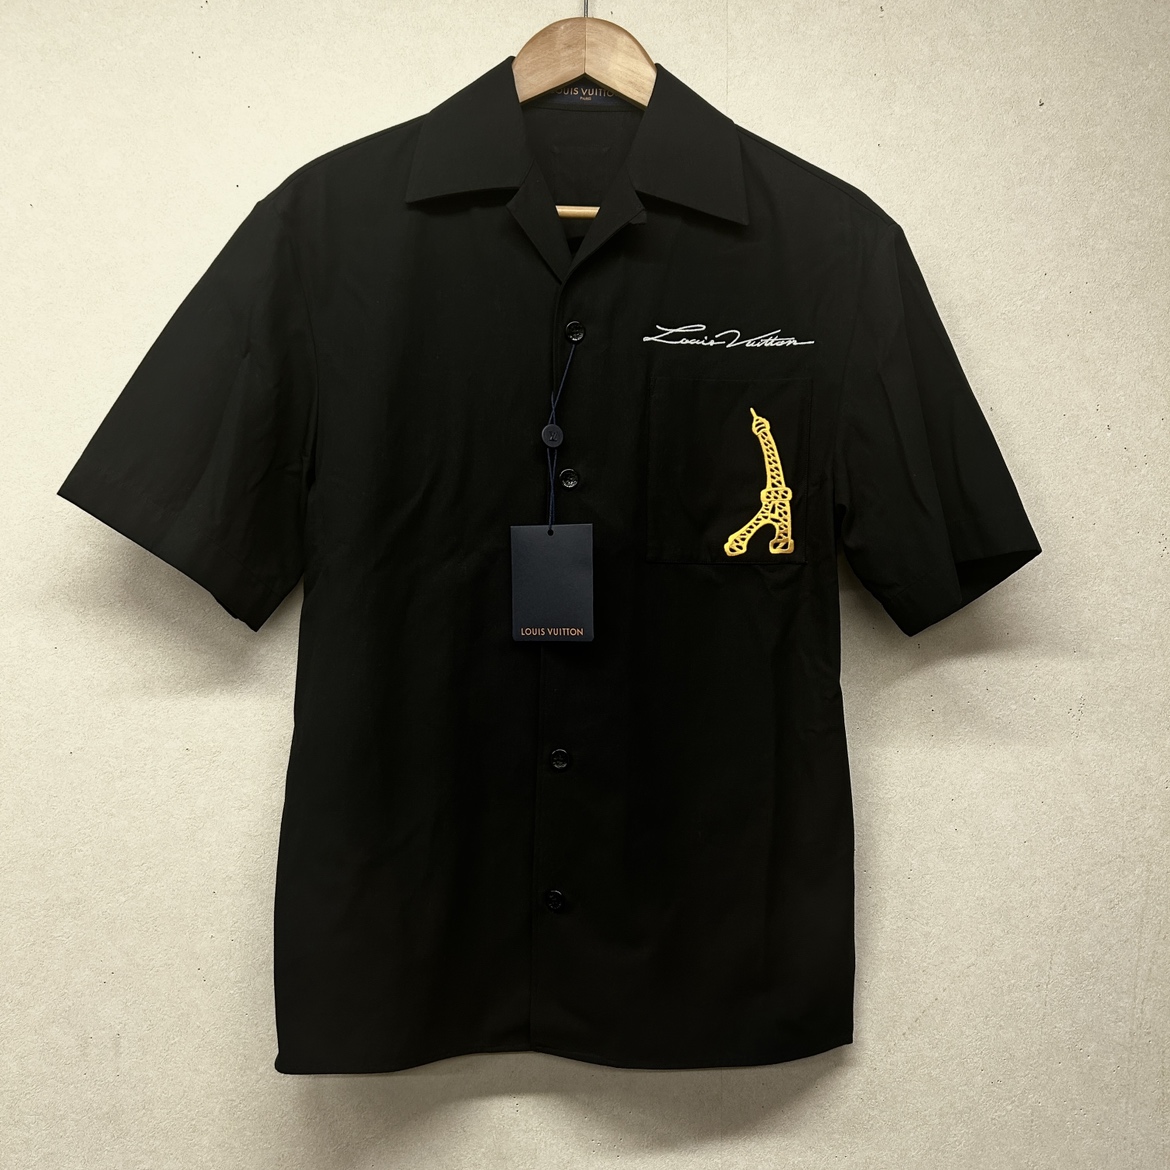 ルイヴィトンの24SS 1AFJHO オープンカラーショートスリーブコットンシャツの買取実績です。